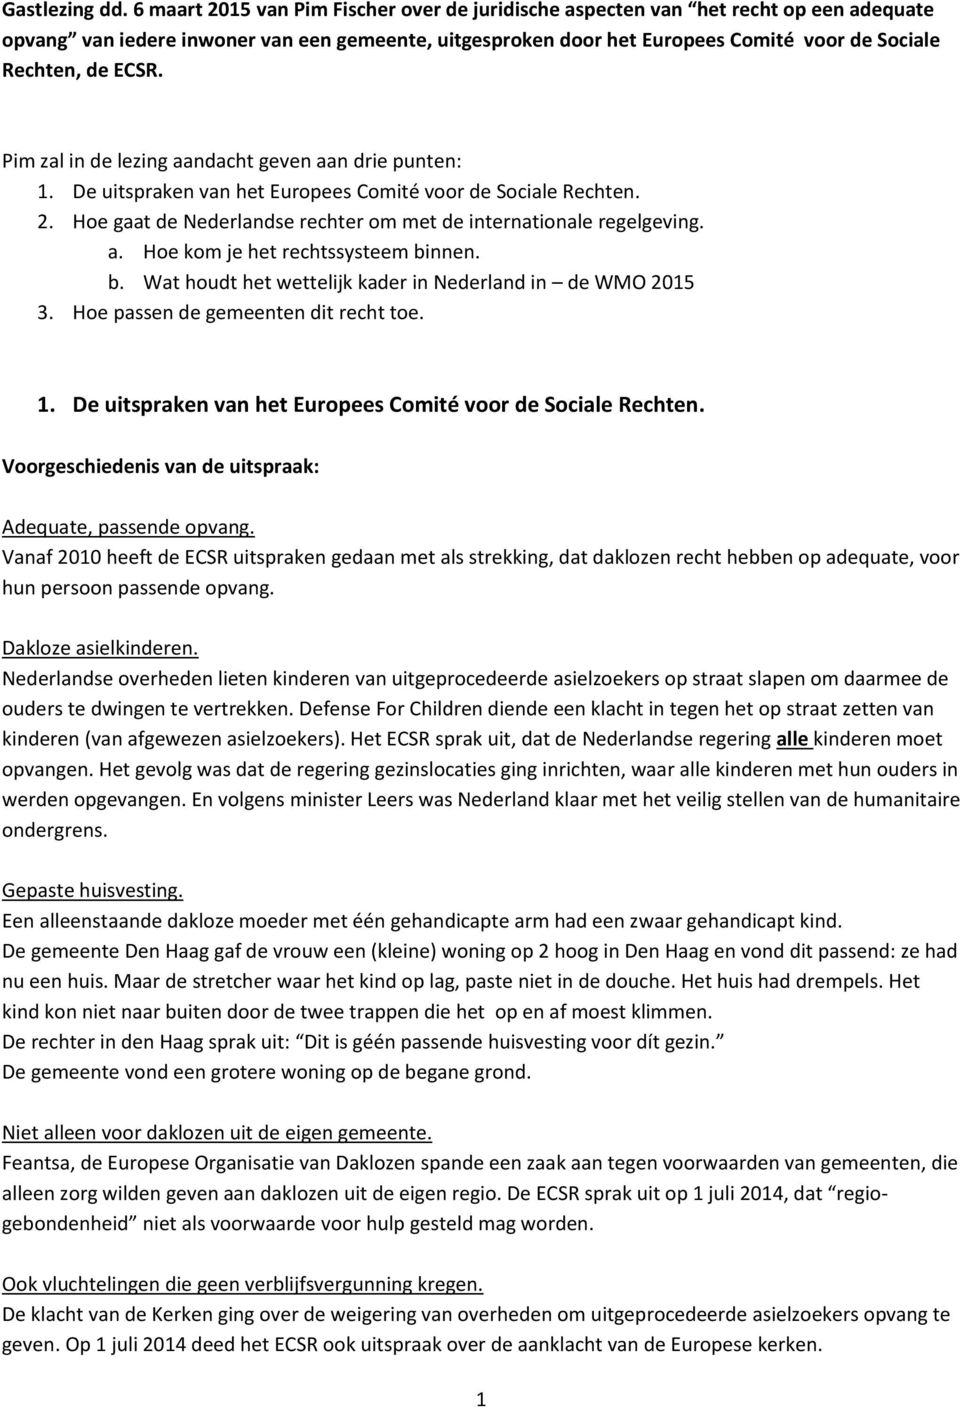 ECSR. Pim zal in de lezing aandacht geven aan drie punten: 1. De uitspraken van het Europees Comité voor de Sociale Rechten. 2. Hoe gaat de Nederlandse rechter om met de internationale regelgeving. a. Hoe kom je het rechtssysteem binnen.